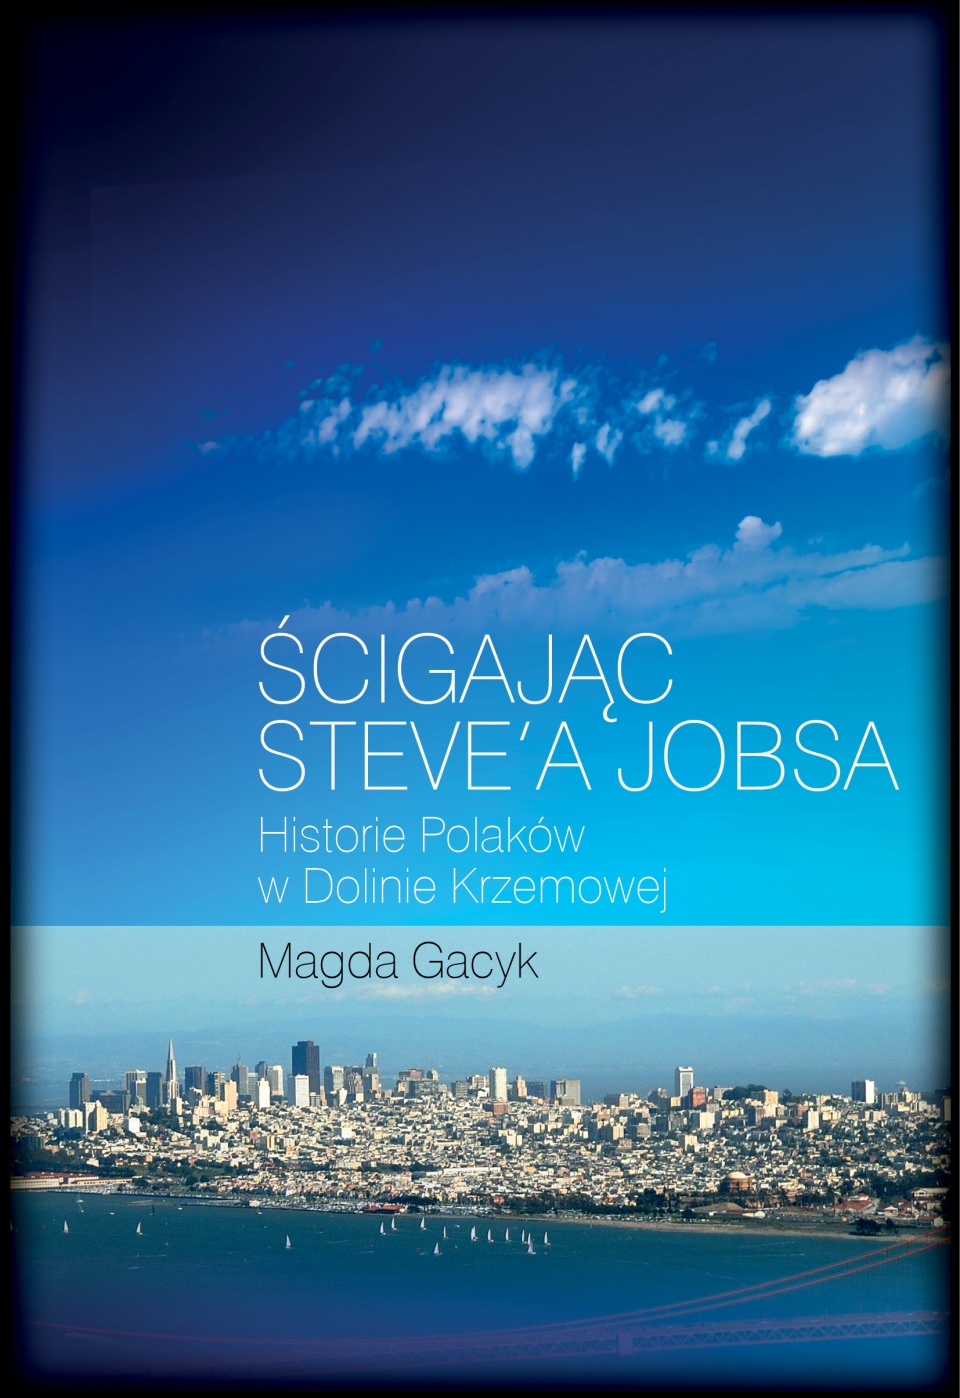 Okładka książki Magdy Gacek "Ścigając Steve'a Jobsa: historie Polaków w Dolinie Krzemowej".